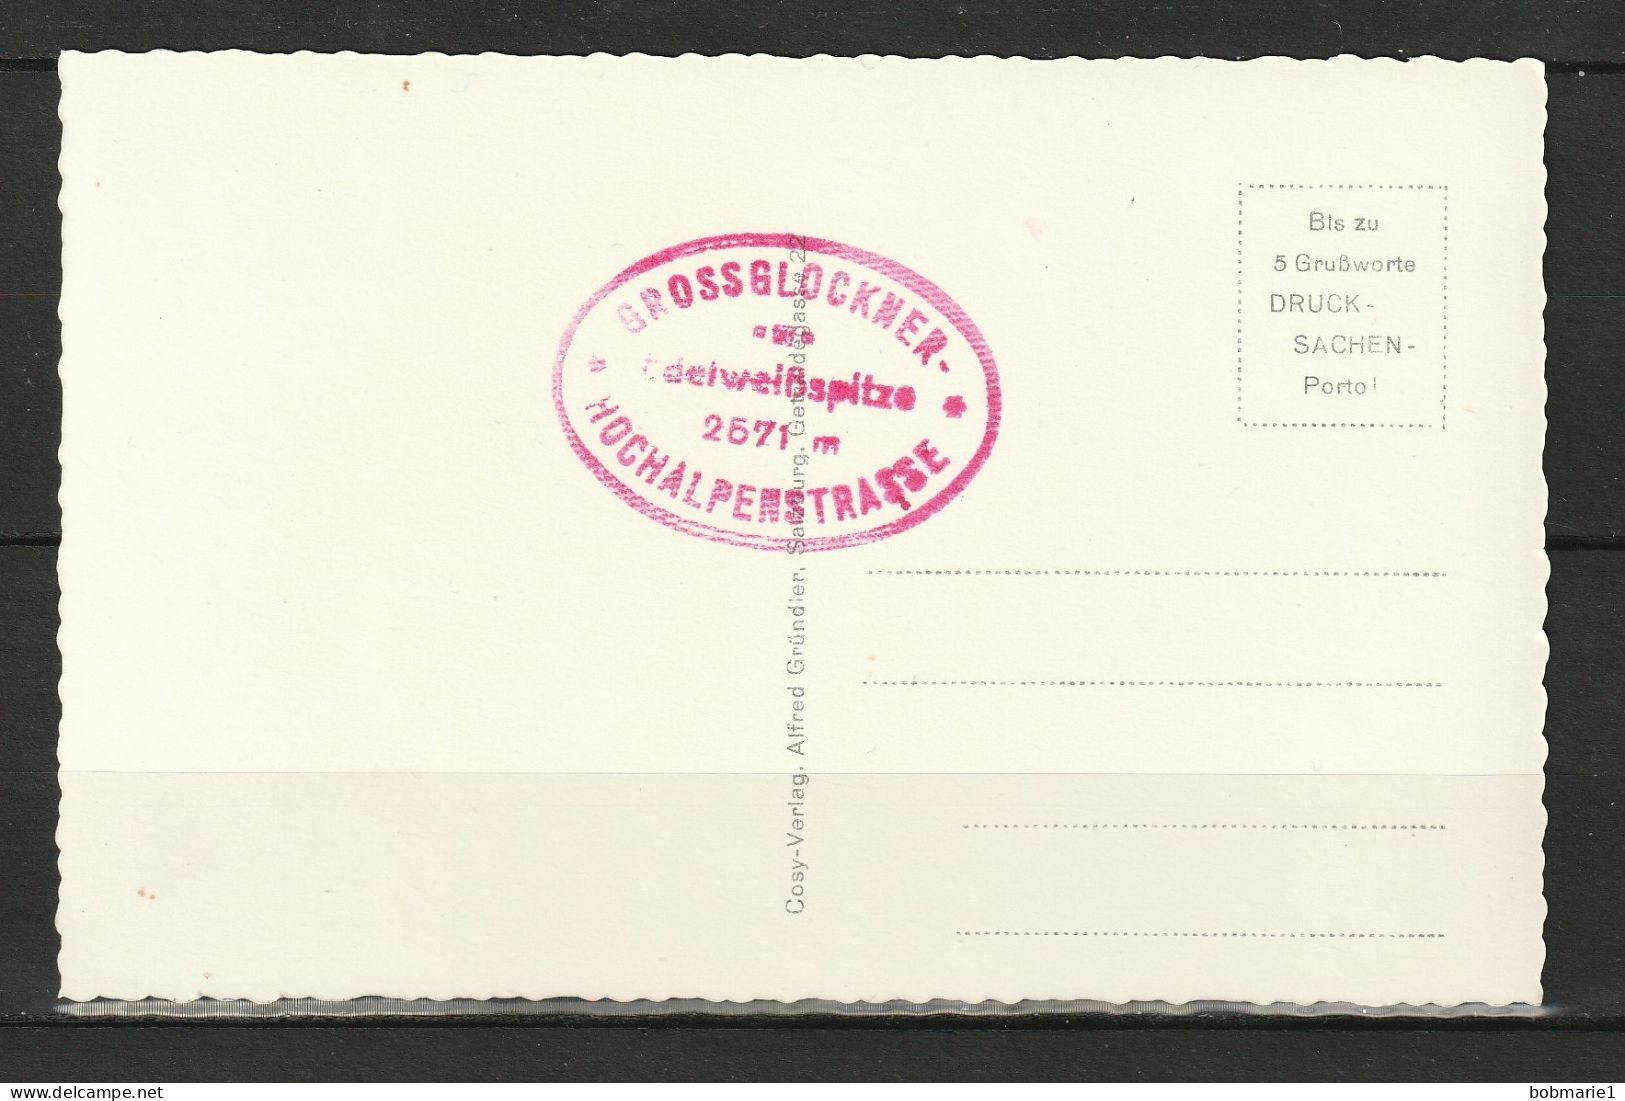 Carte Postale Autriche Grossglockner Hochalpenstabe Edelweibhutte 2571m. Non Circulée, Noir Et Blanc, Coupe Dentelée - Collezioni E Lotti